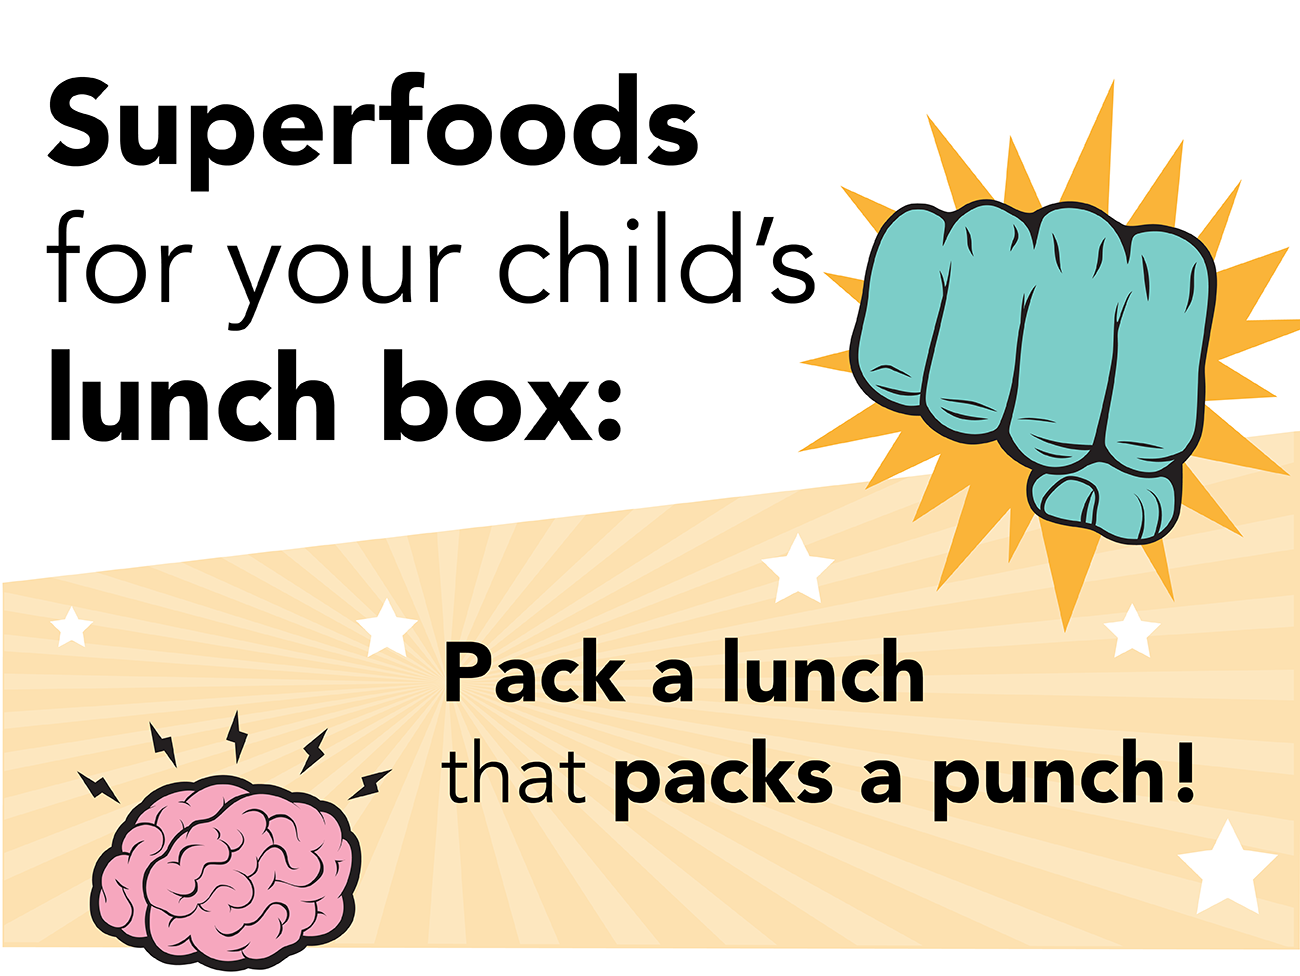 图片上画着一个拳击的拳头，上面写着“孩子午餐盒的超级食物:准备一份装有拳击拳的午餐!”